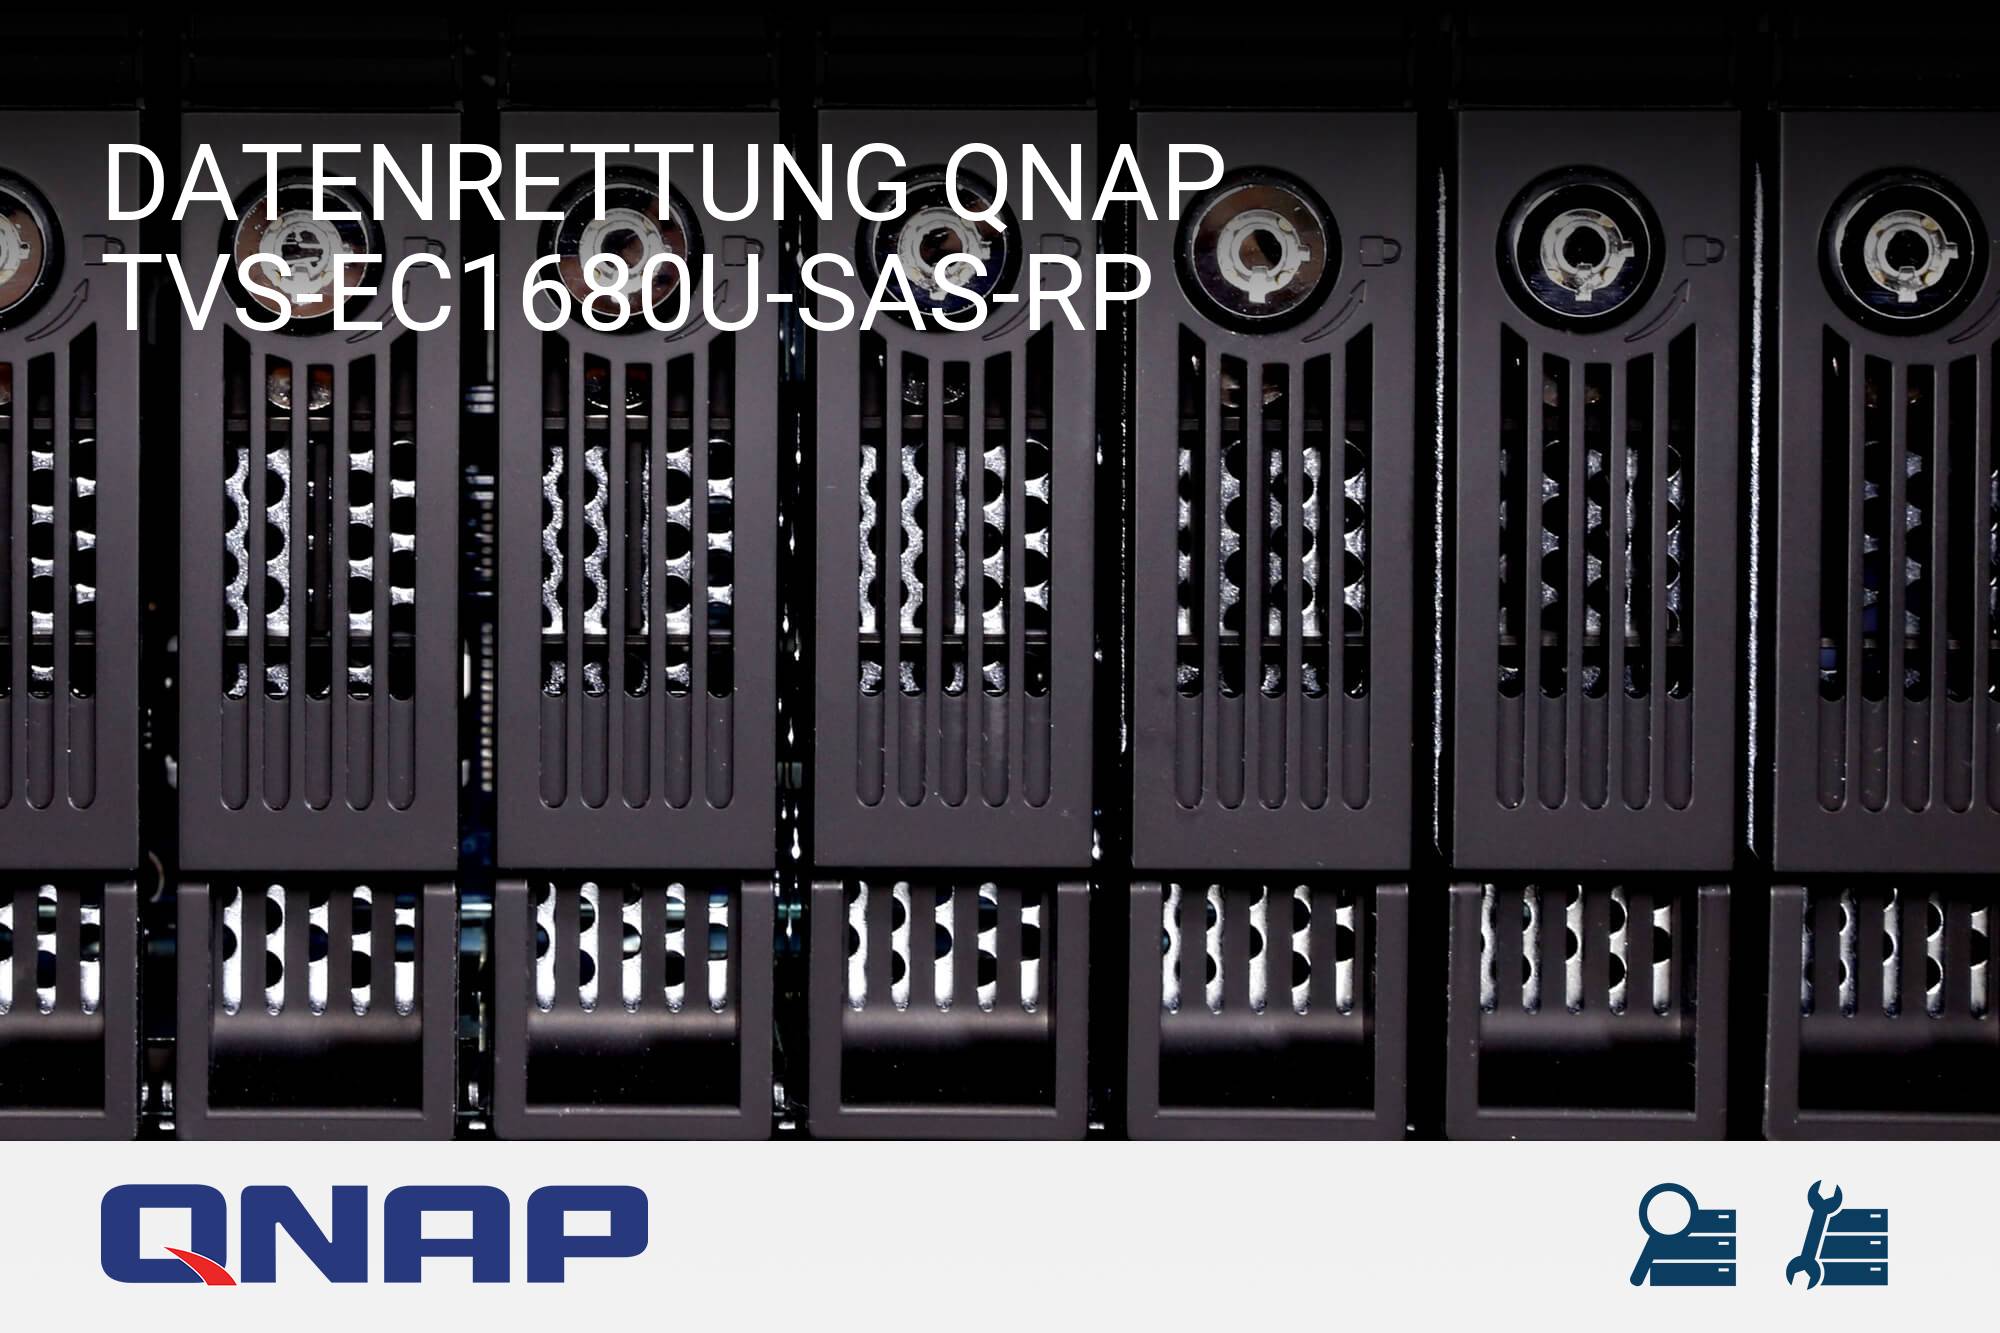 QNAP TVS-EC1680U-SAS-RP